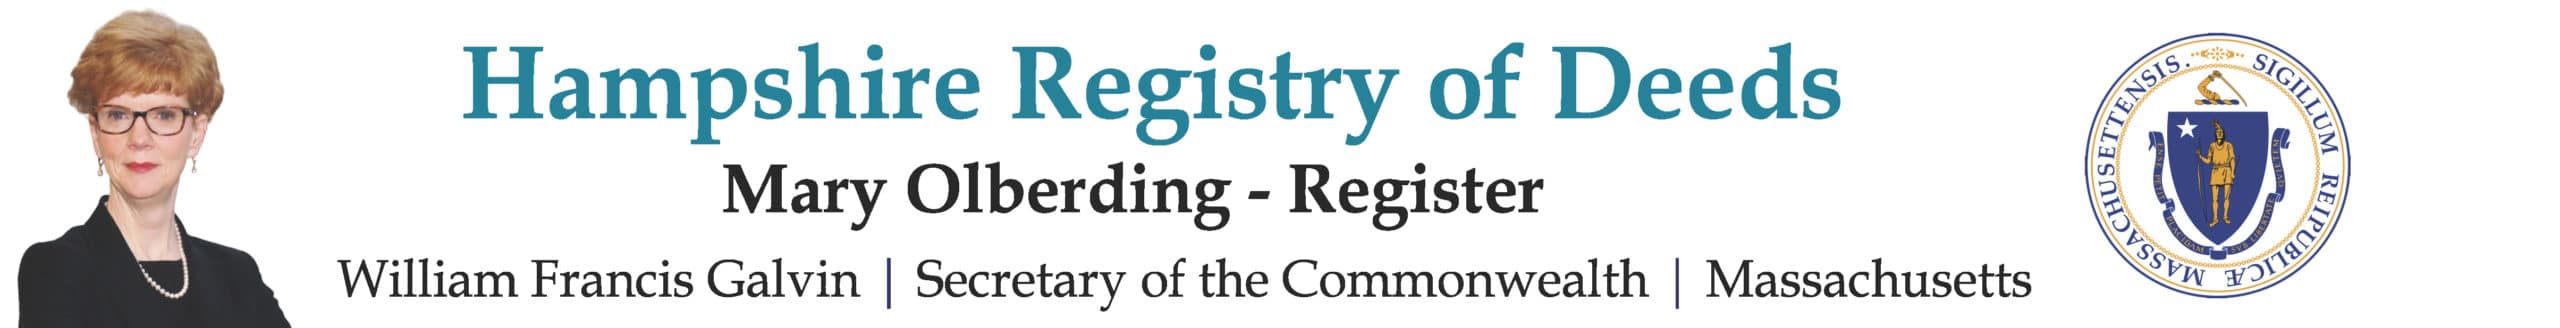 Hampshire Registry of Deeds